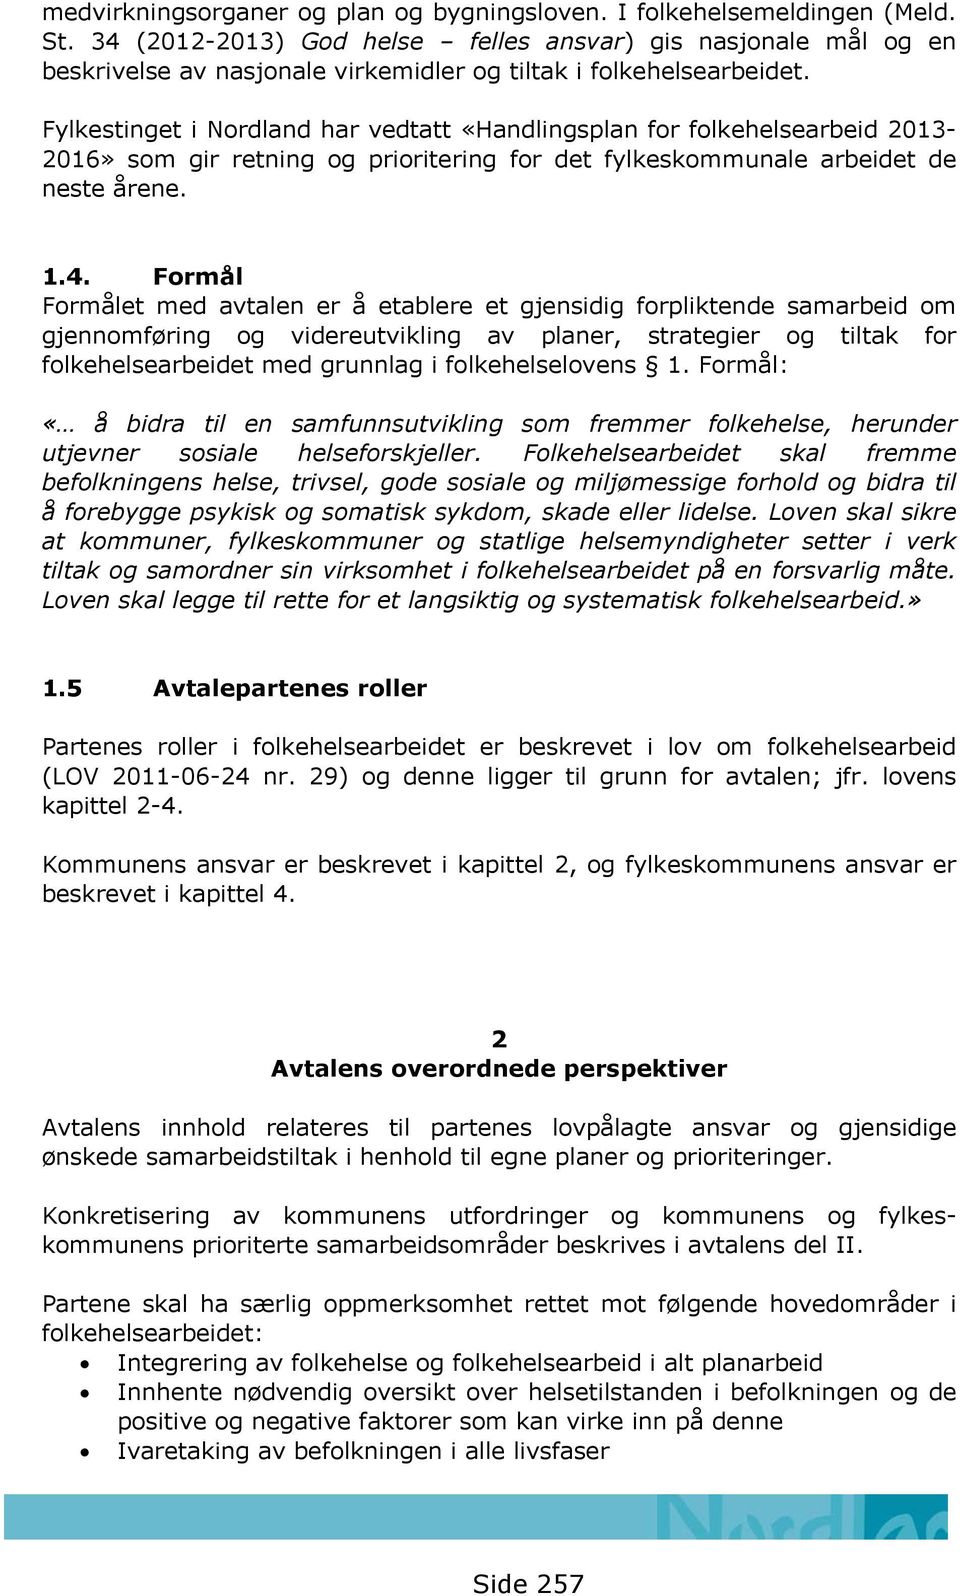 Fylkestinget i Nordland har vedtatt «Handlingsplan for folkehelsearbeid 2013-2016» som gir retning og prioritering for det fylkeskommunale arbeidet de neste årene. 1.4.